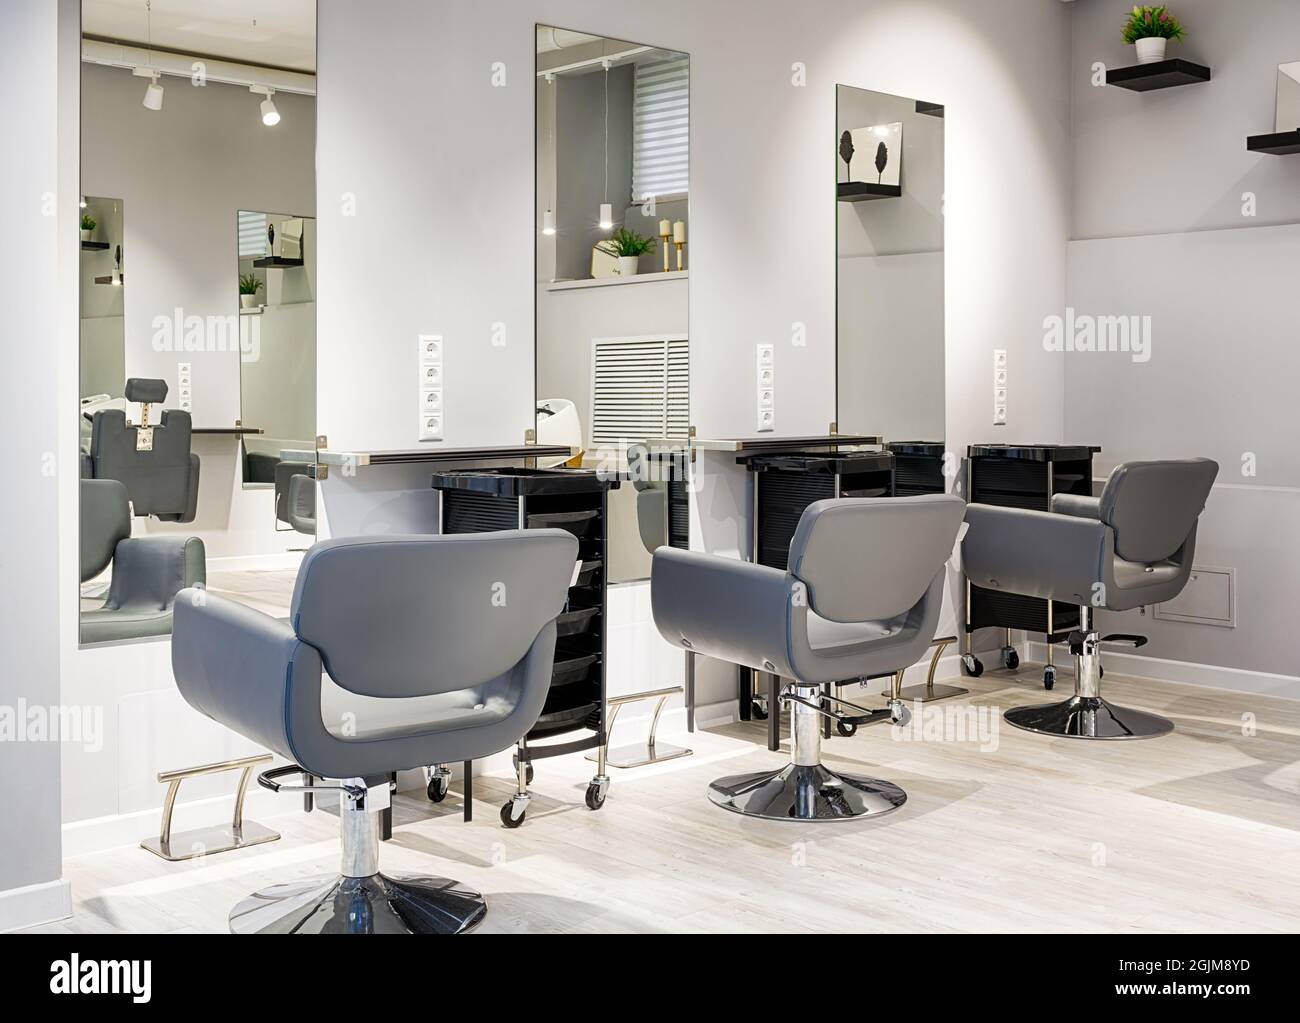 Salon de coiffure intérieur, magasin de beauté moderne après rénovation. Salon de coiffure intérieur vide avec miroirs et chaises en cuir. Salon de coiffure branché et propre avec Banque D'Images